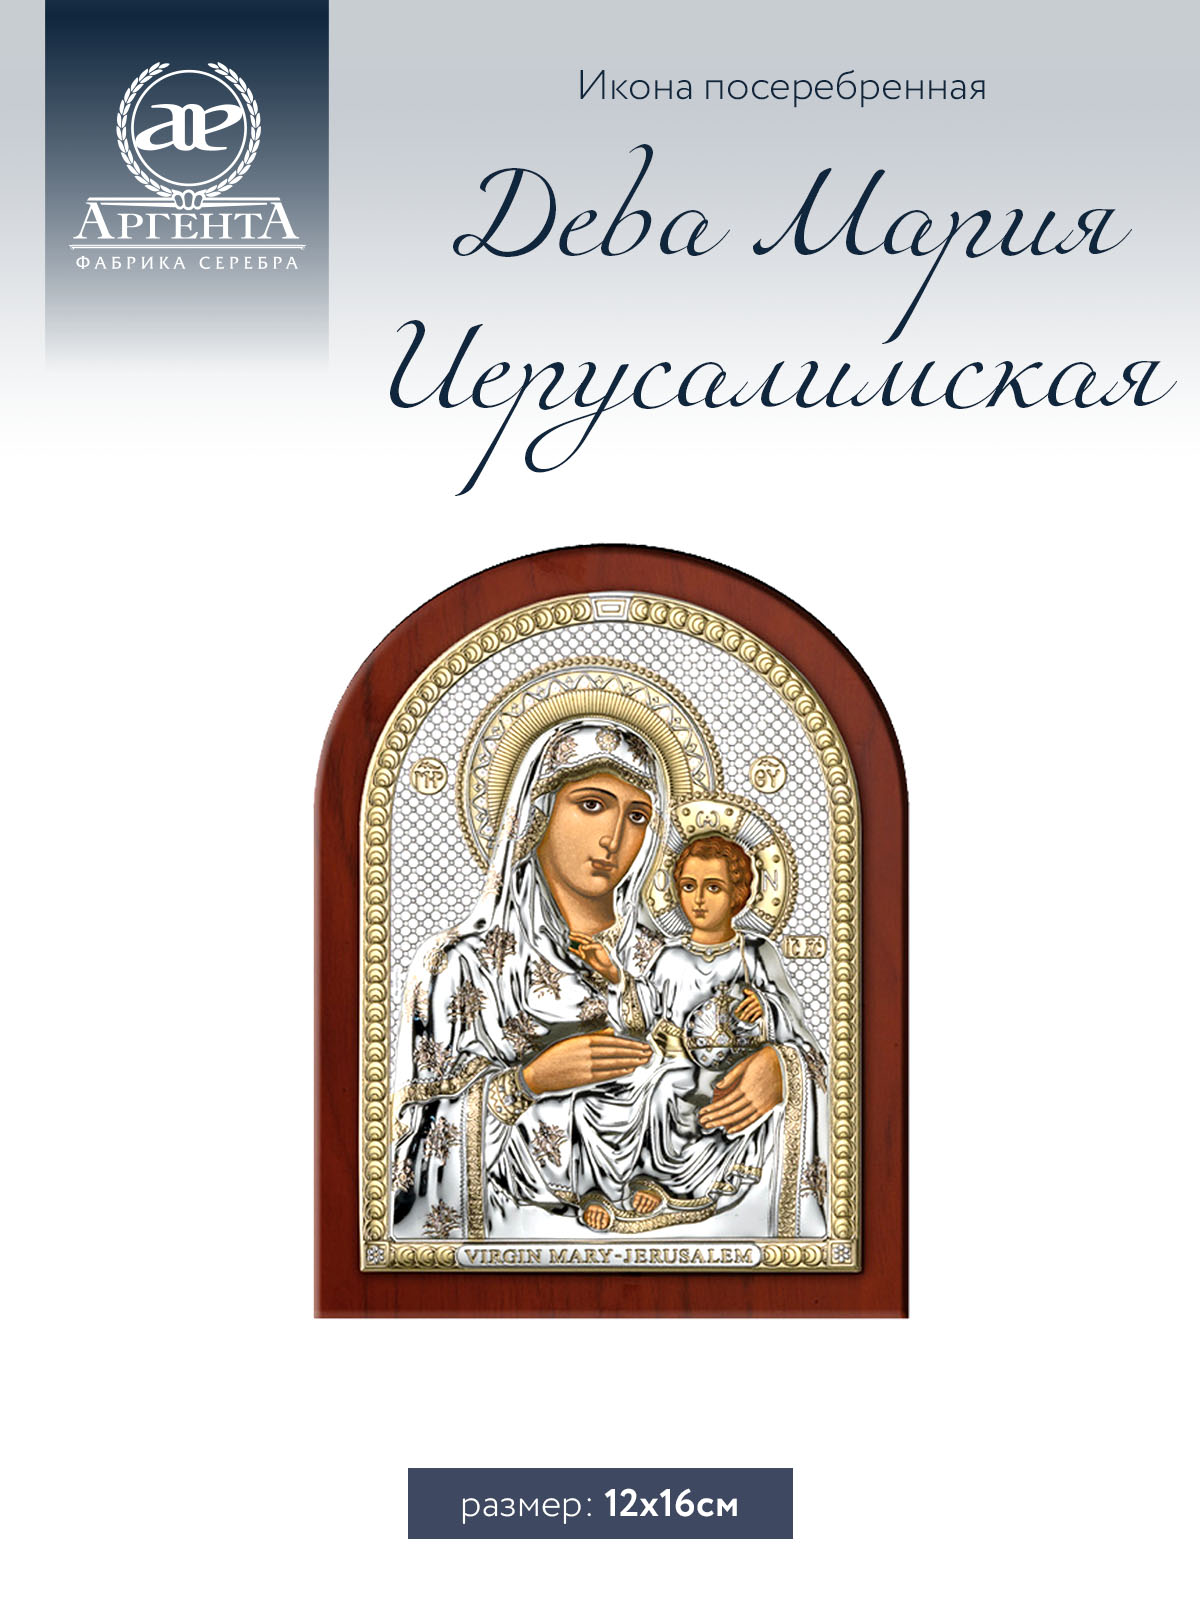 Икона Аргента Дева Мария Иерусалимская 12*16